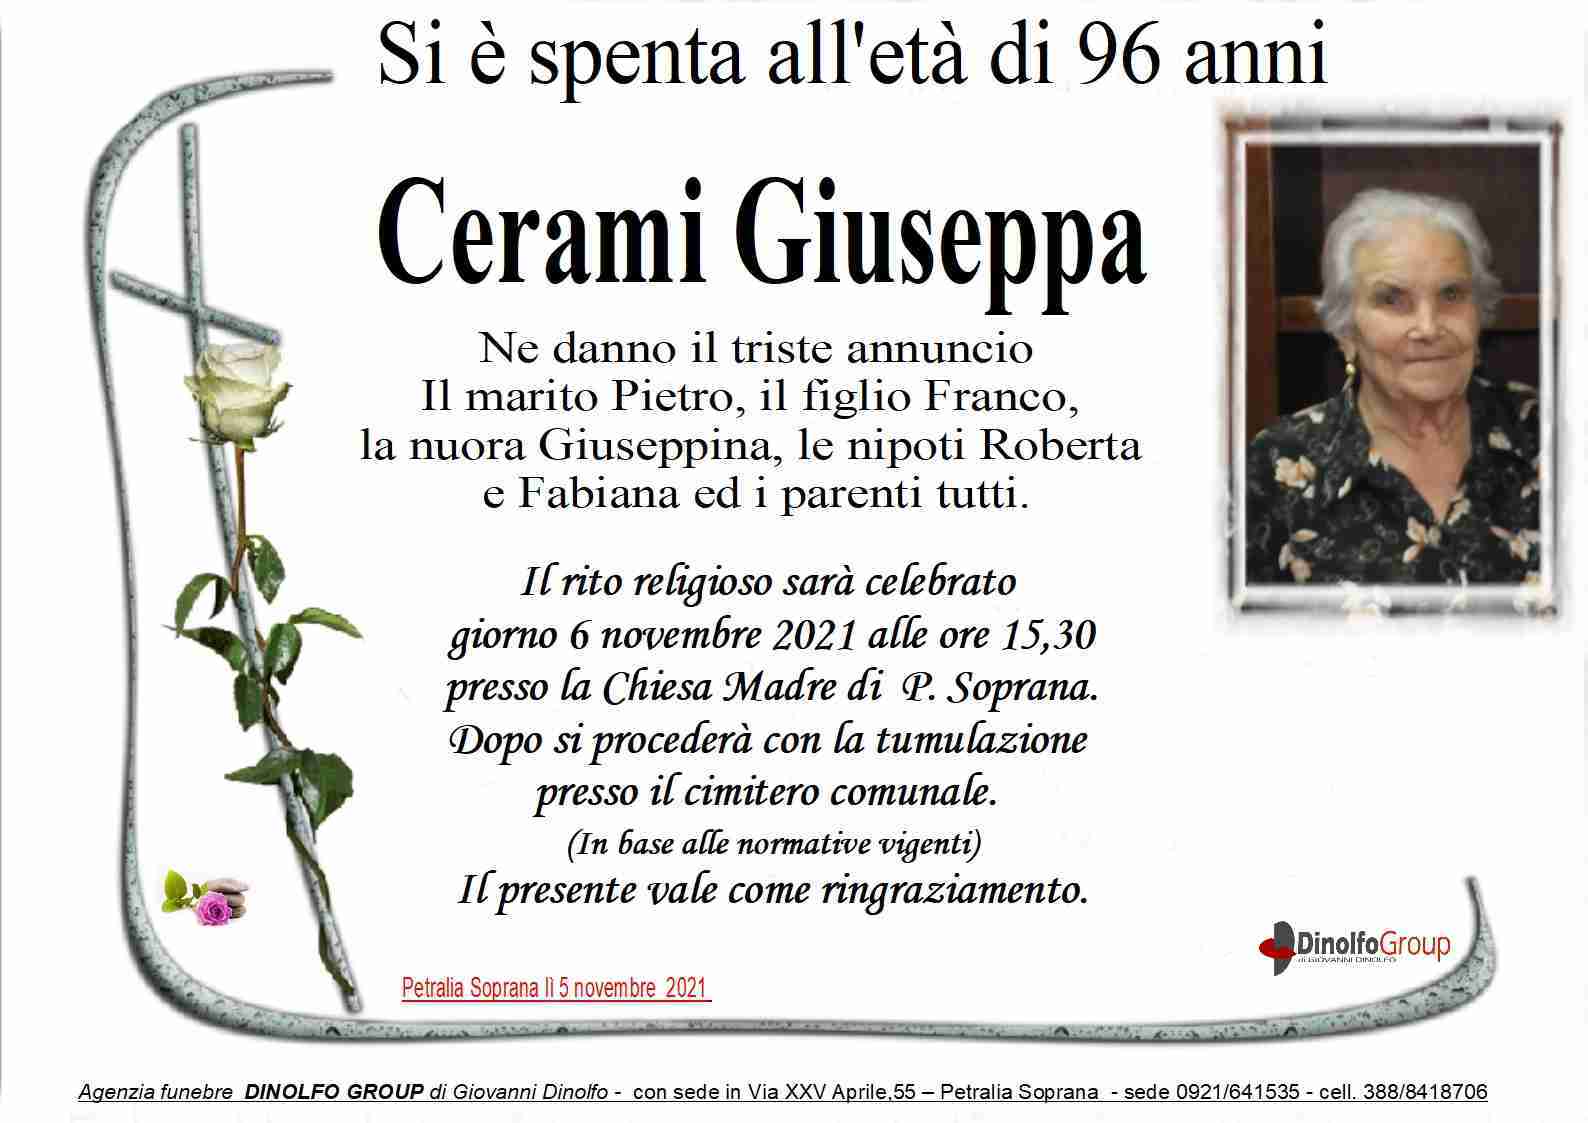 Giuseppa Cerami